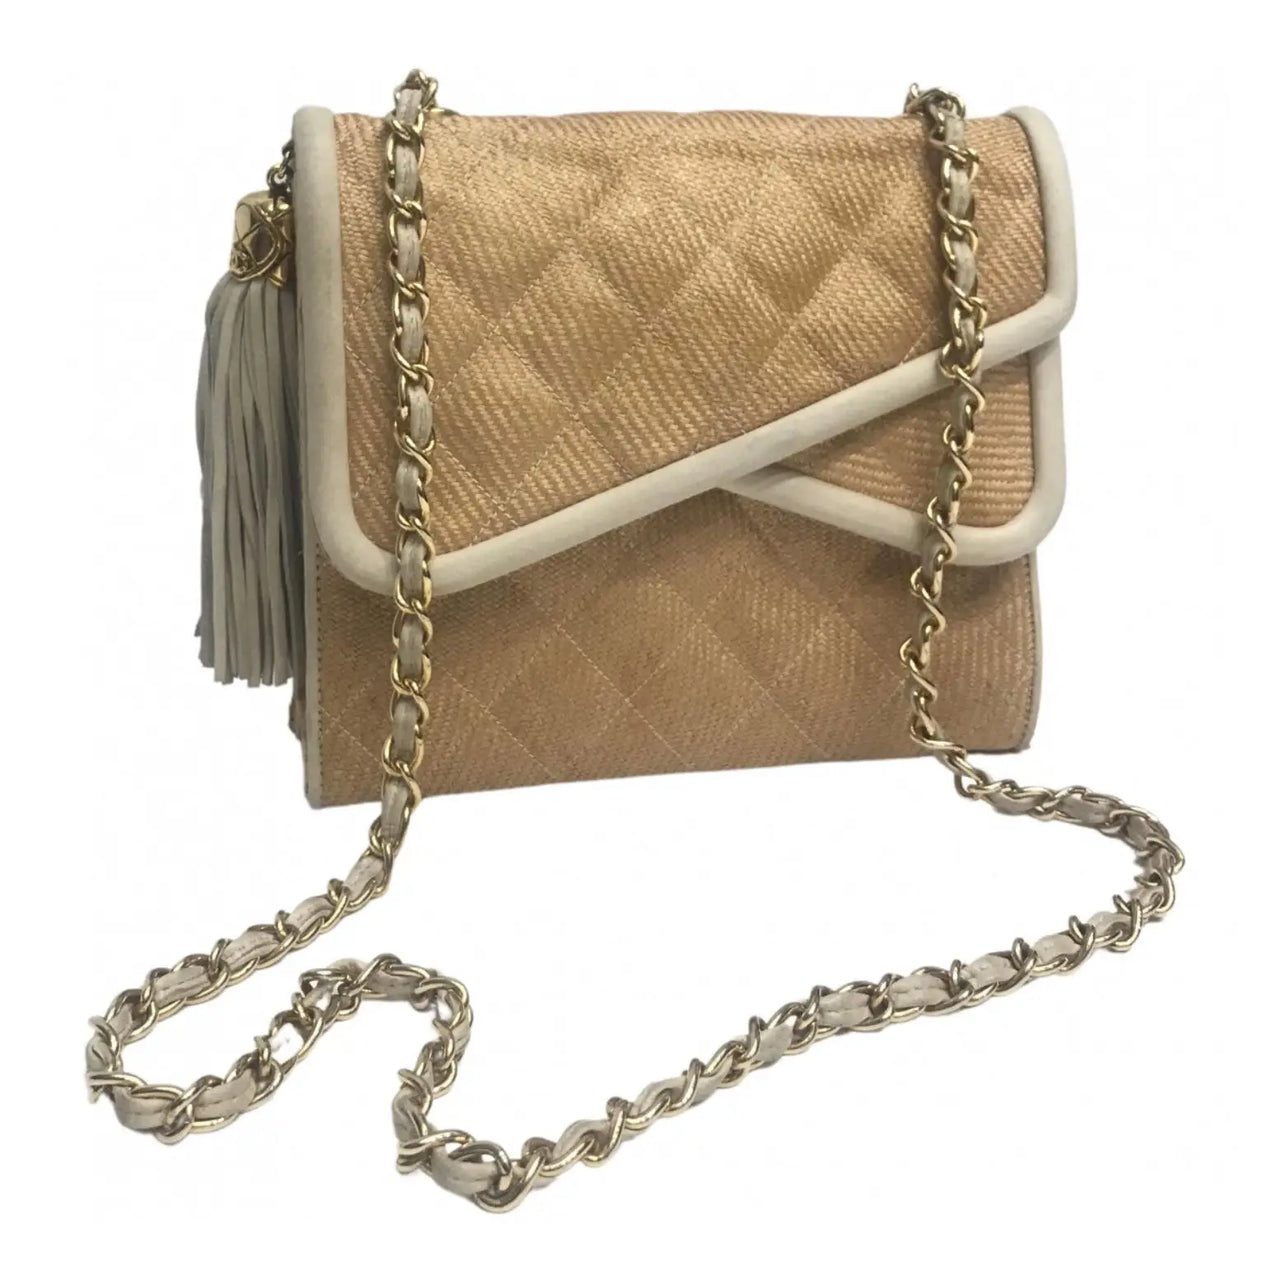 Vintage Chanel Leather/Raffia Tassel Shoulder Bag